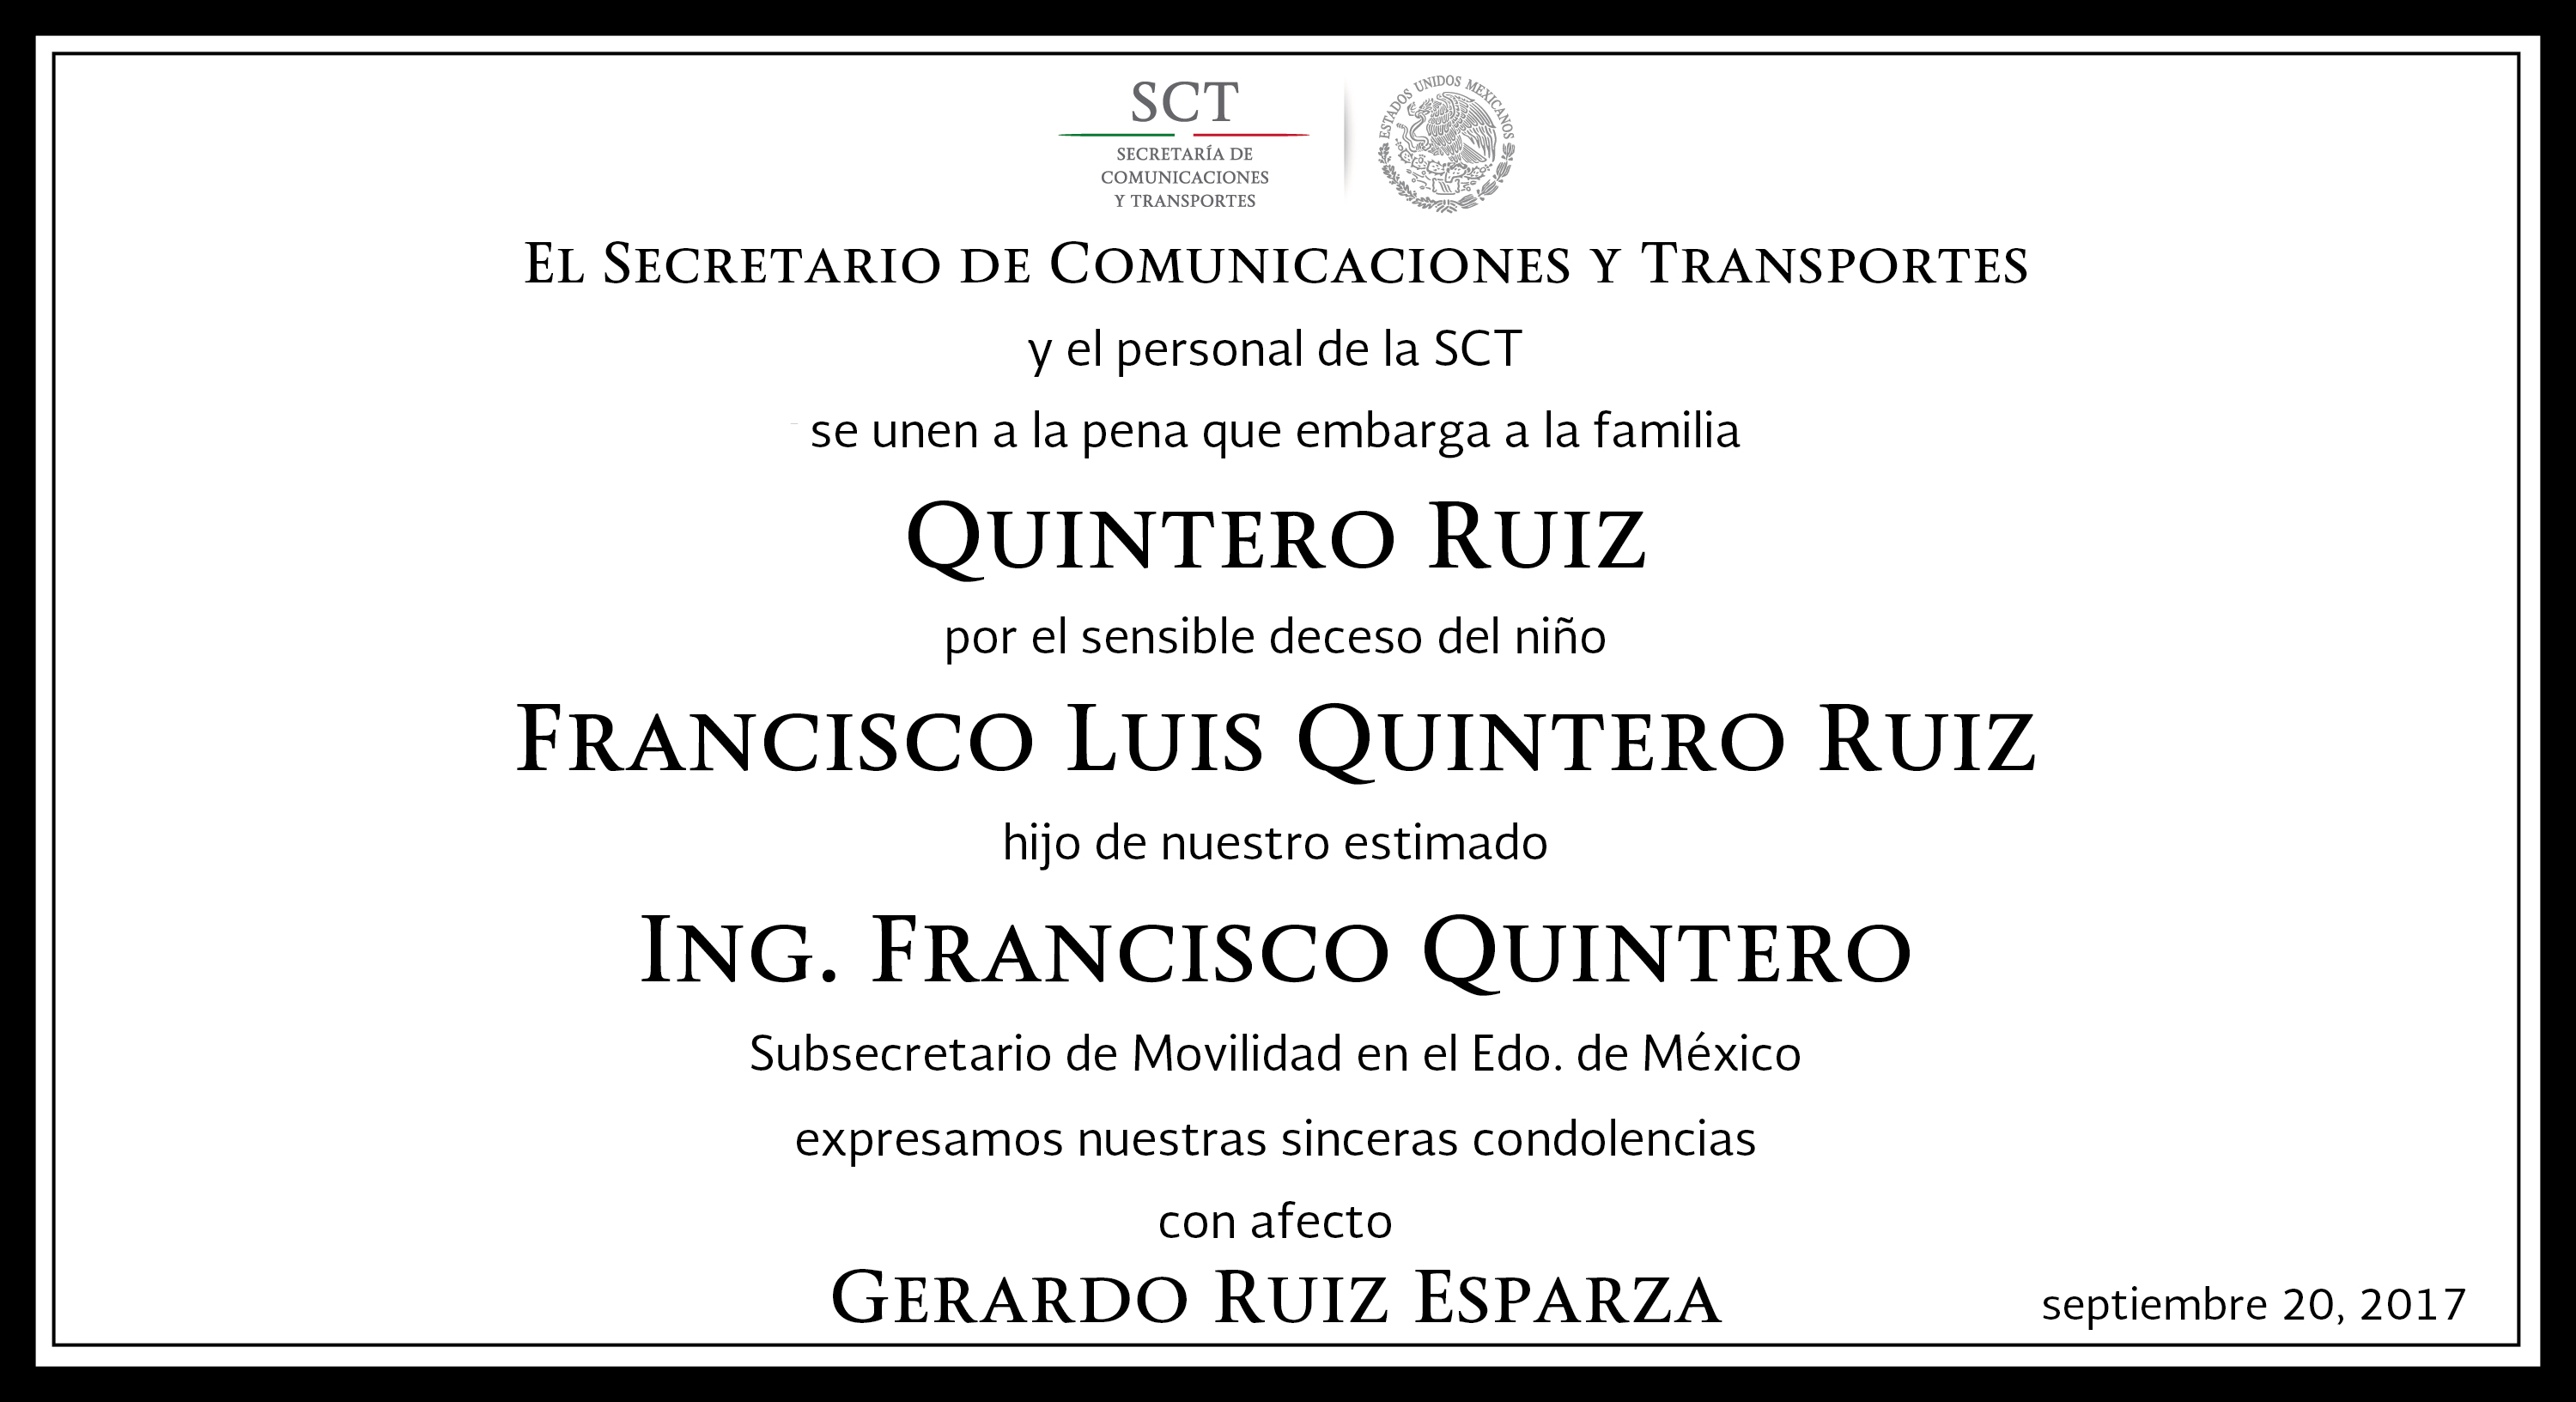 La SCT lamenta el deceso del pequeño Francisco Luis Quintero Ruiz